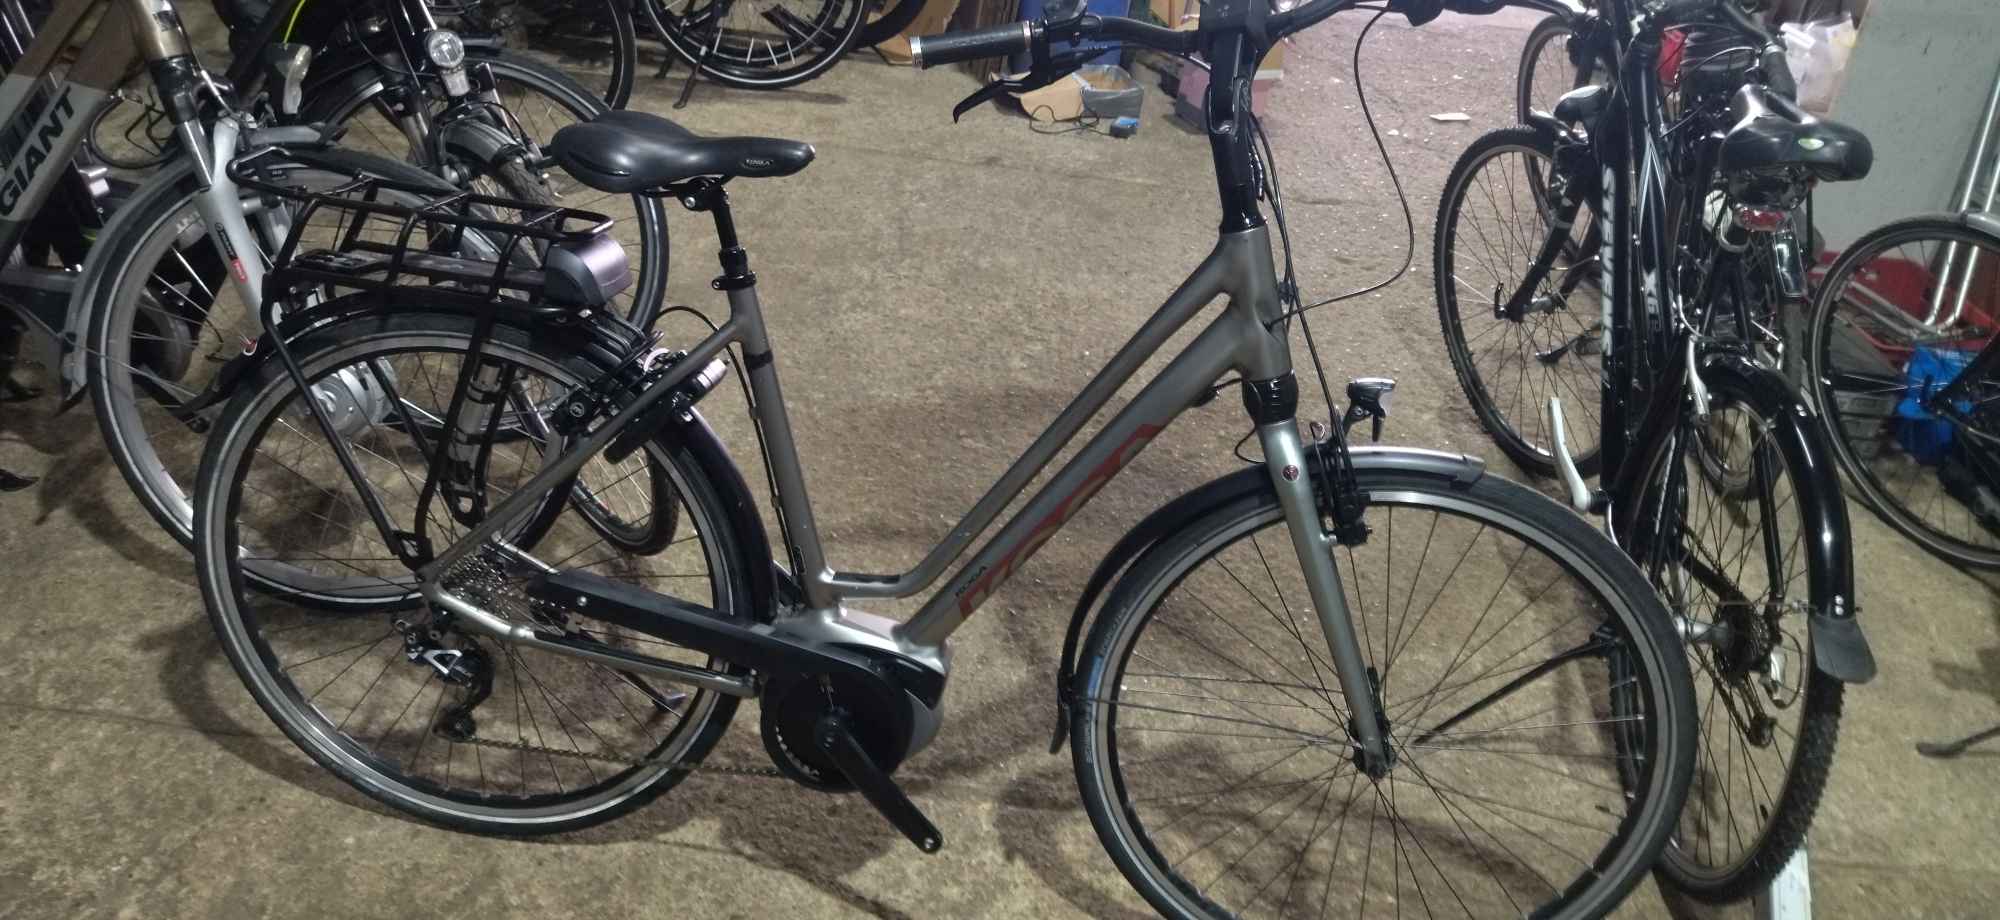 Mam do sprzedania rowery z wspomaganiem elektryczne Nederlandy Kępno - zdjęcie 2